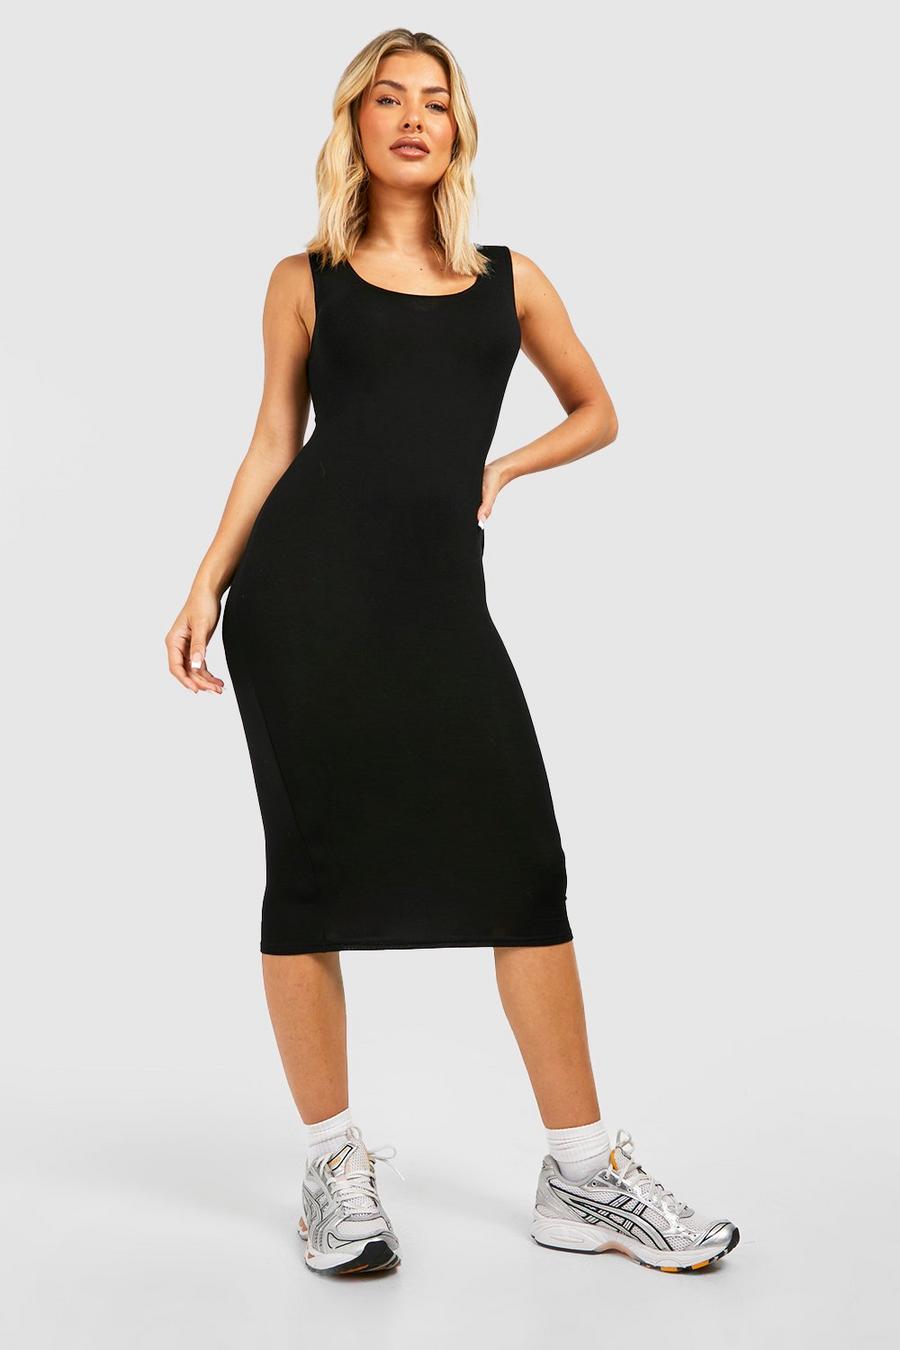 Black Basics Strappy Midi Dress